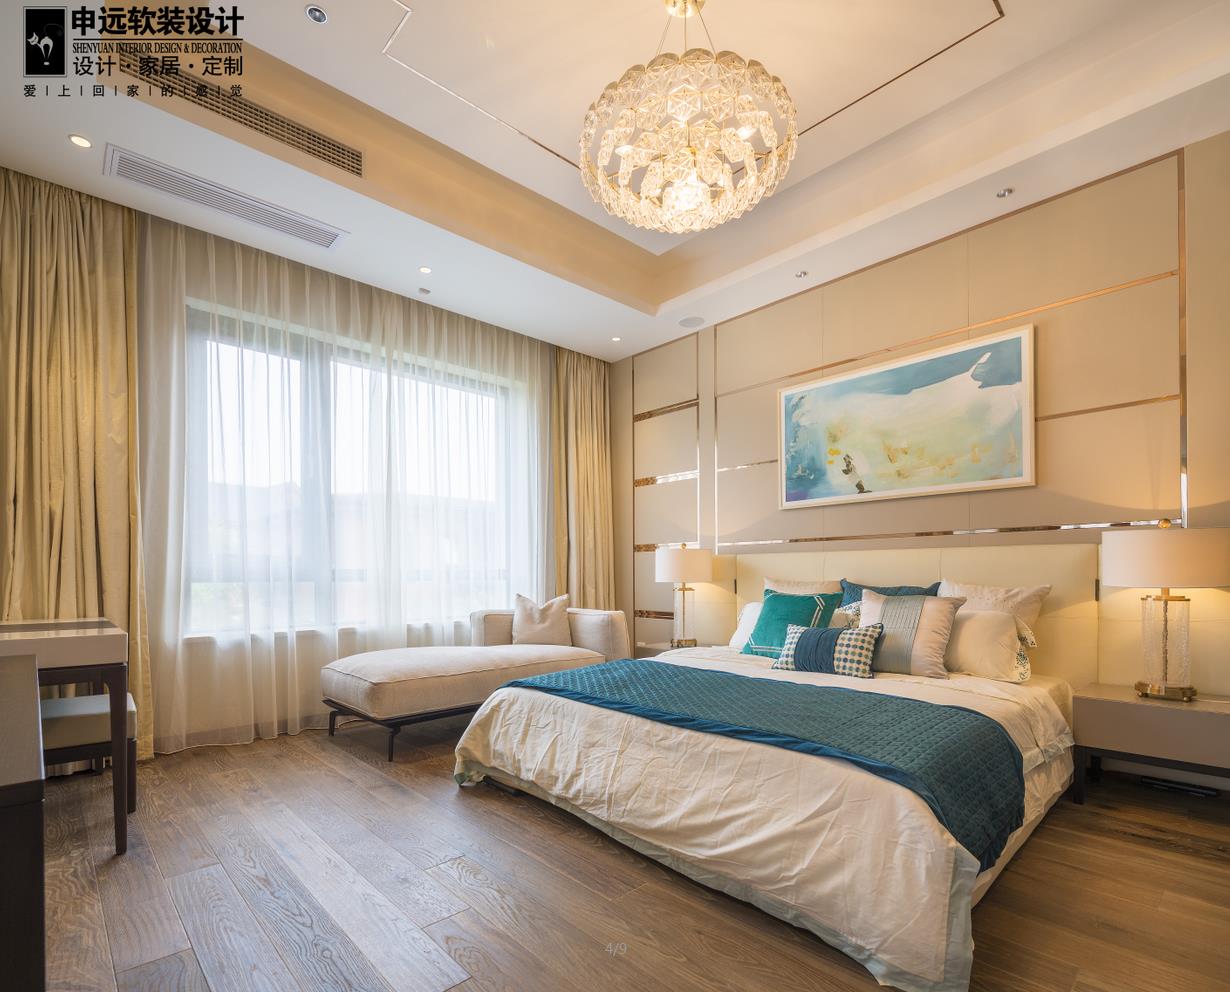 简约 三居 现代 软装 卧室图片来自申远空间设计北京分公司在北京申远空间设计-软装实景拍摄的分享